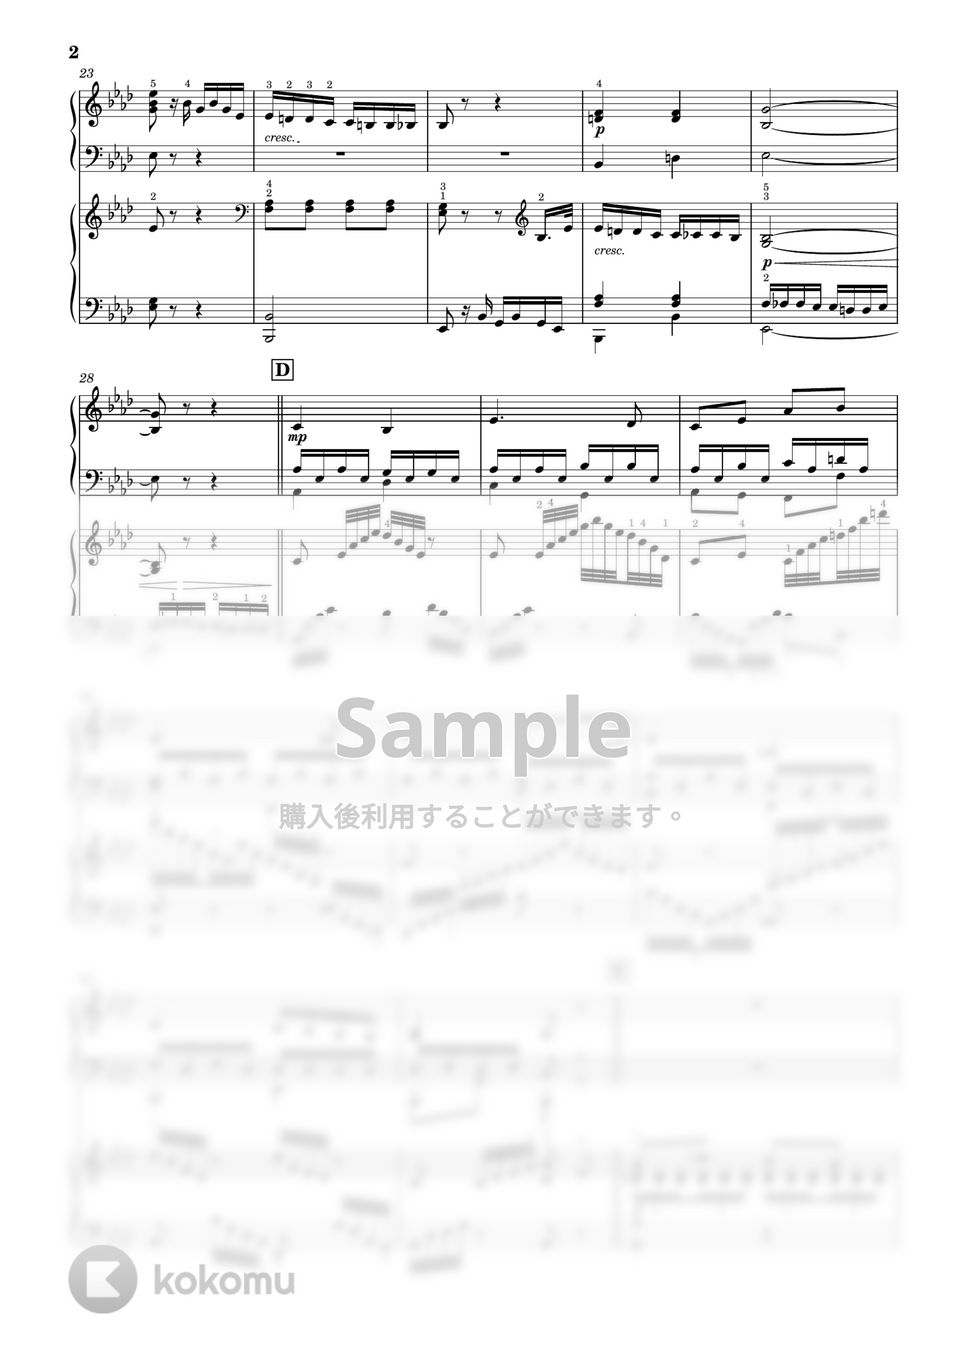 L.v.Beethoven - 【2台ピアノ編曲】ピアノソナタ 第8番「悲愴」ハ短調 Op.13 第2楽章 (2台ピアノ) by PiaFlu